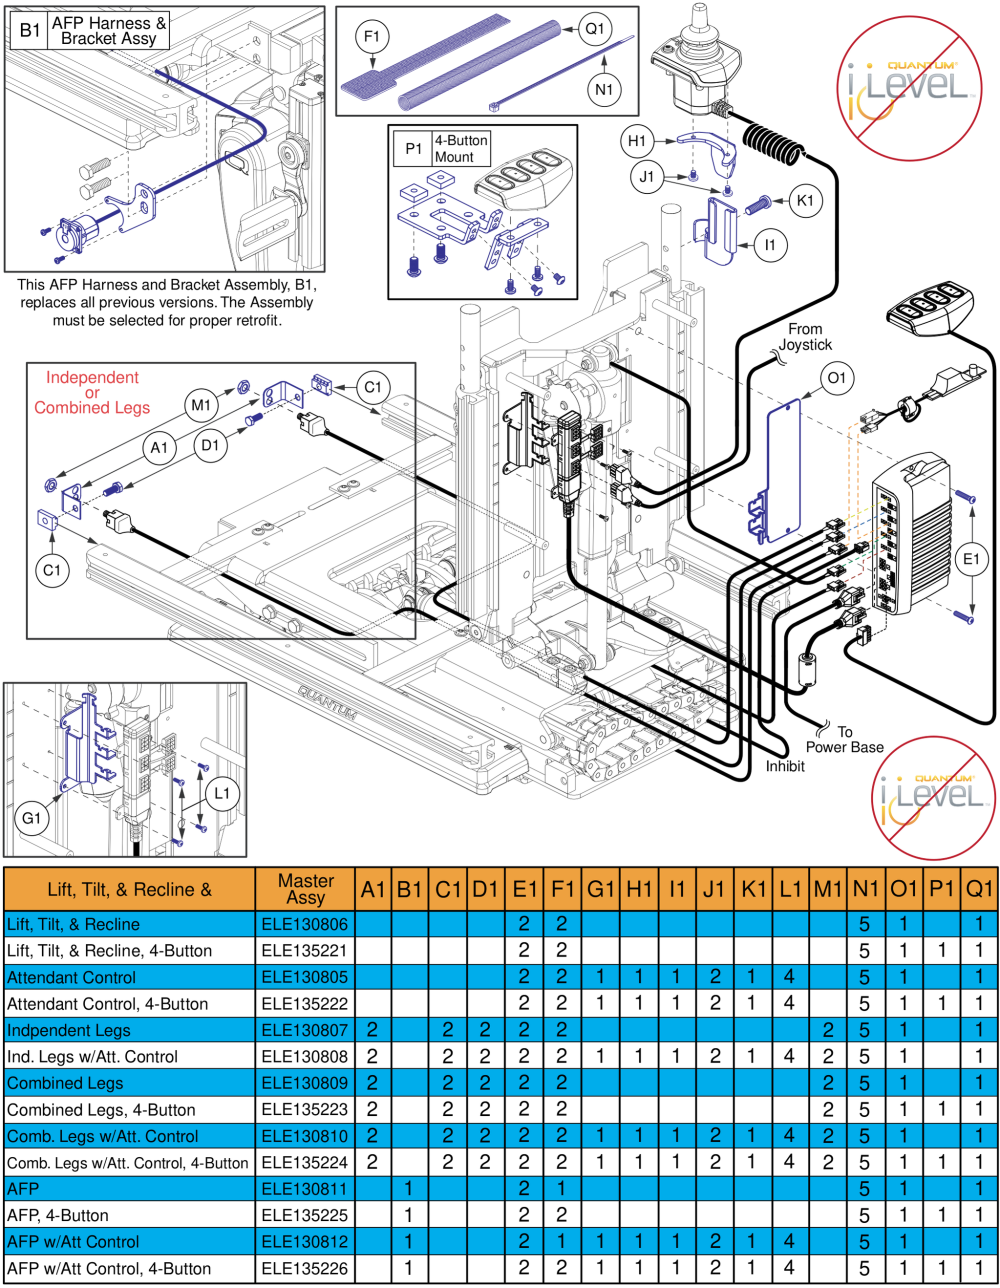 Lift, Tilt, & Recline Hardware, Q-logic 2 - Reac Lift / Non I-level parts diagram